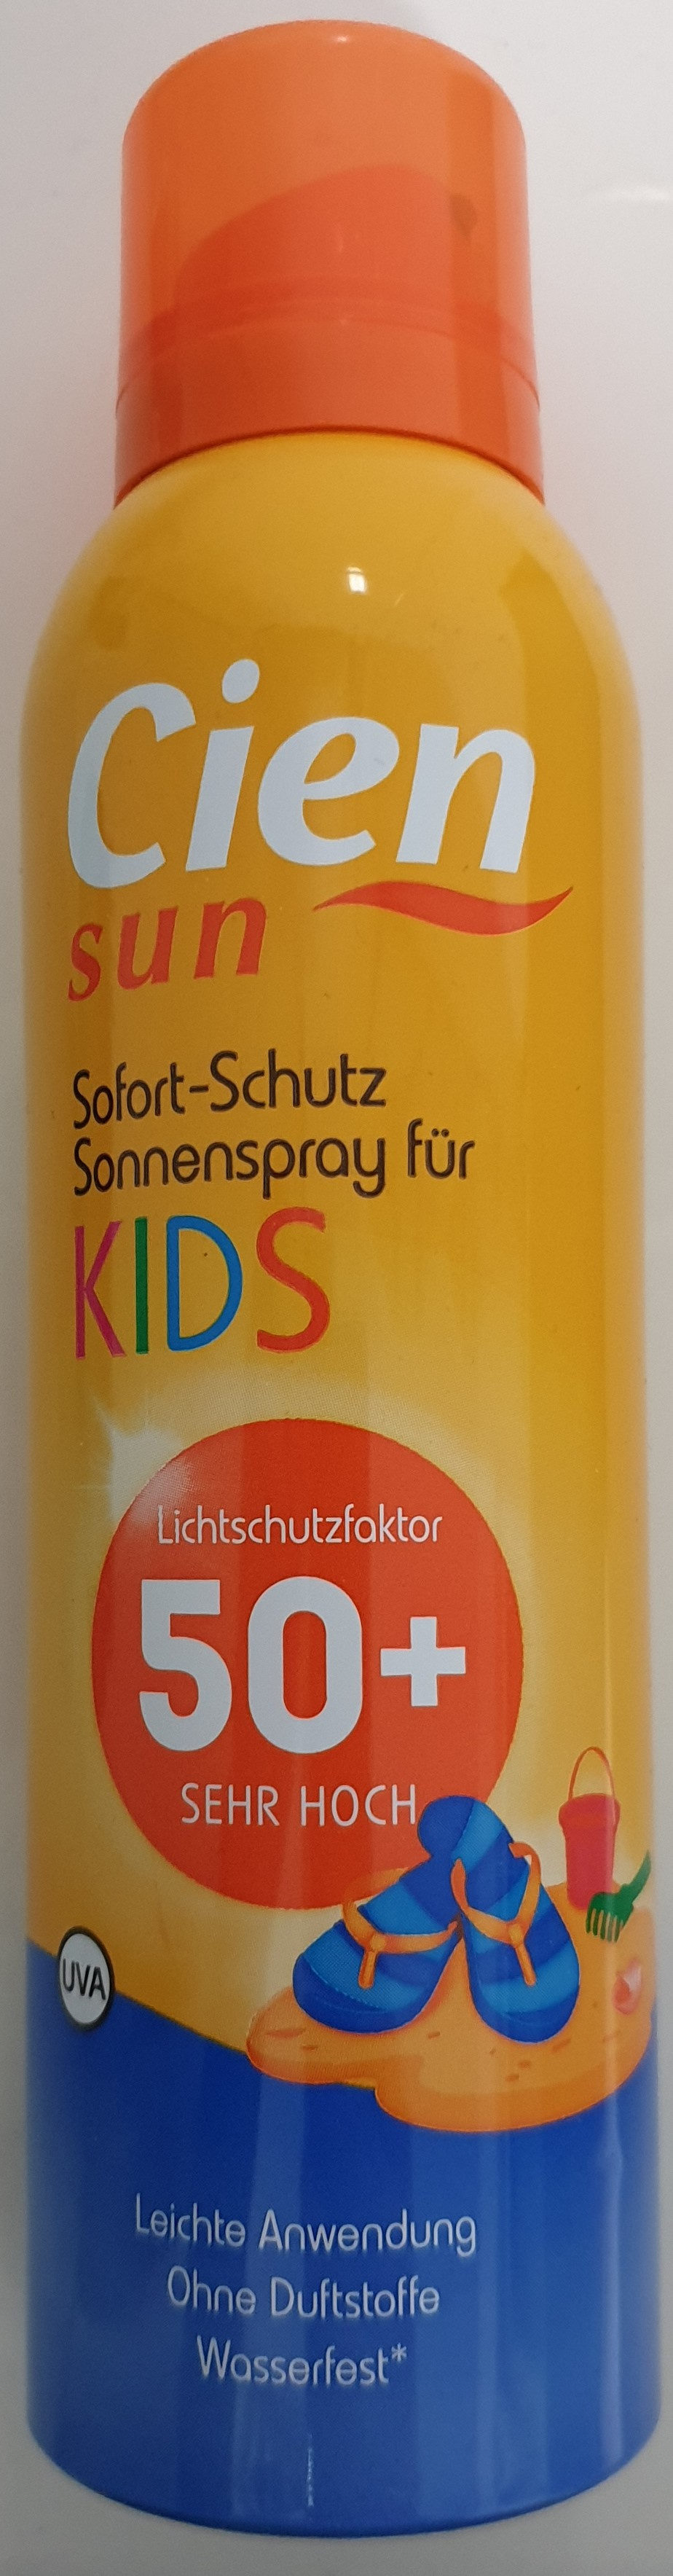 Sofort-Schutz Sonnenspray für Kids 50+ - نتاج - de